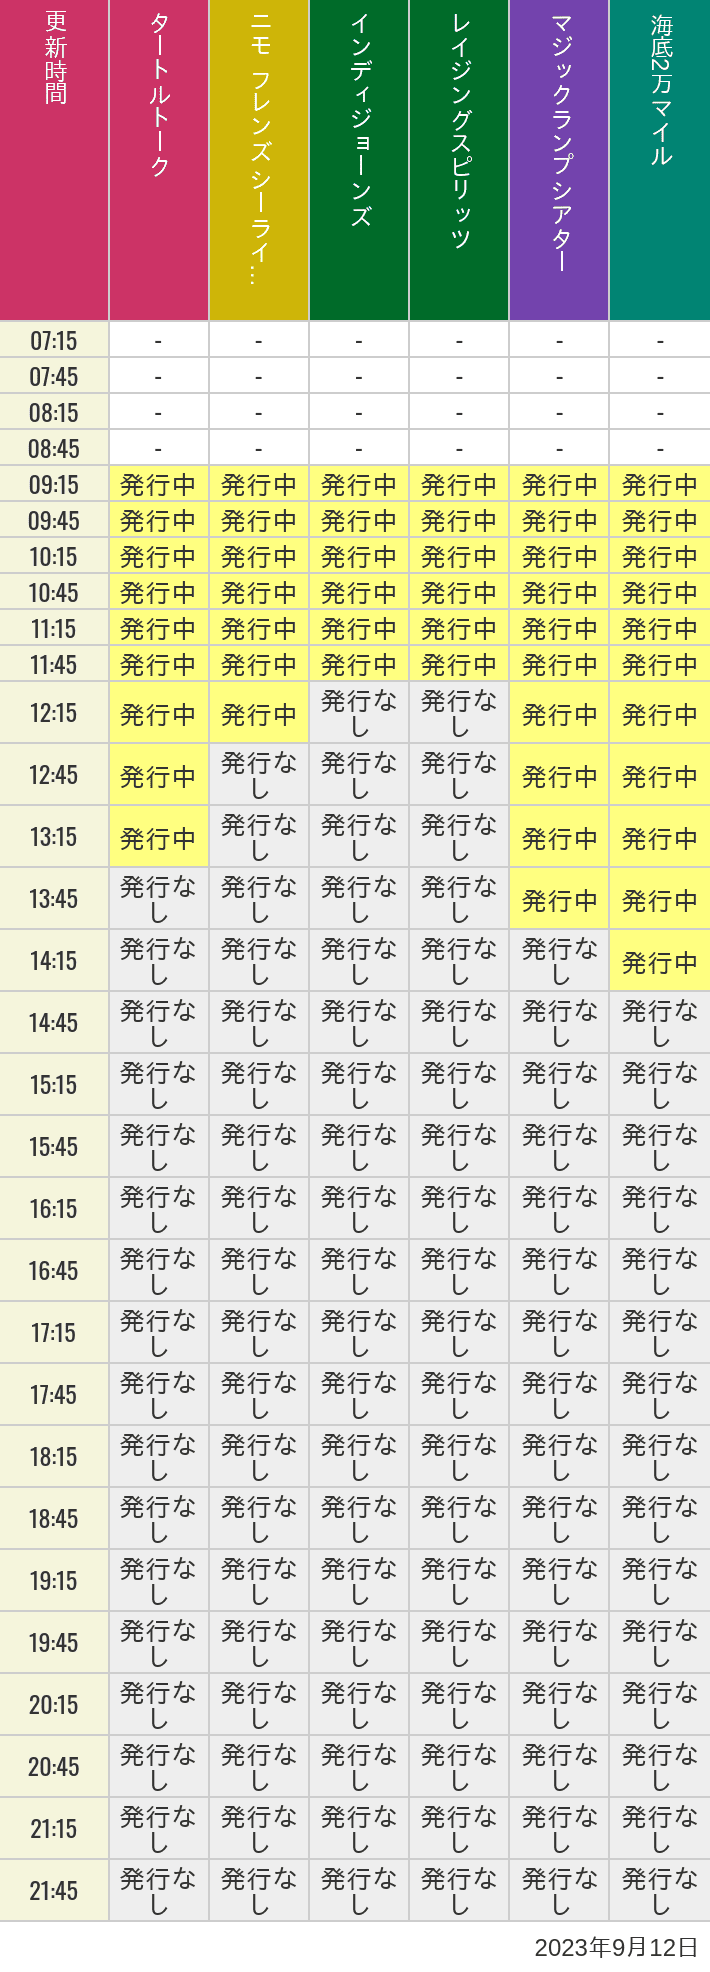 2023年9月12日（火）のソアリン  タワー オブ テラー トイストーリーマニア タートルトーク ニモ フレンズ シーライダーの待ち時間を7時から21時まで時間別に記録した表